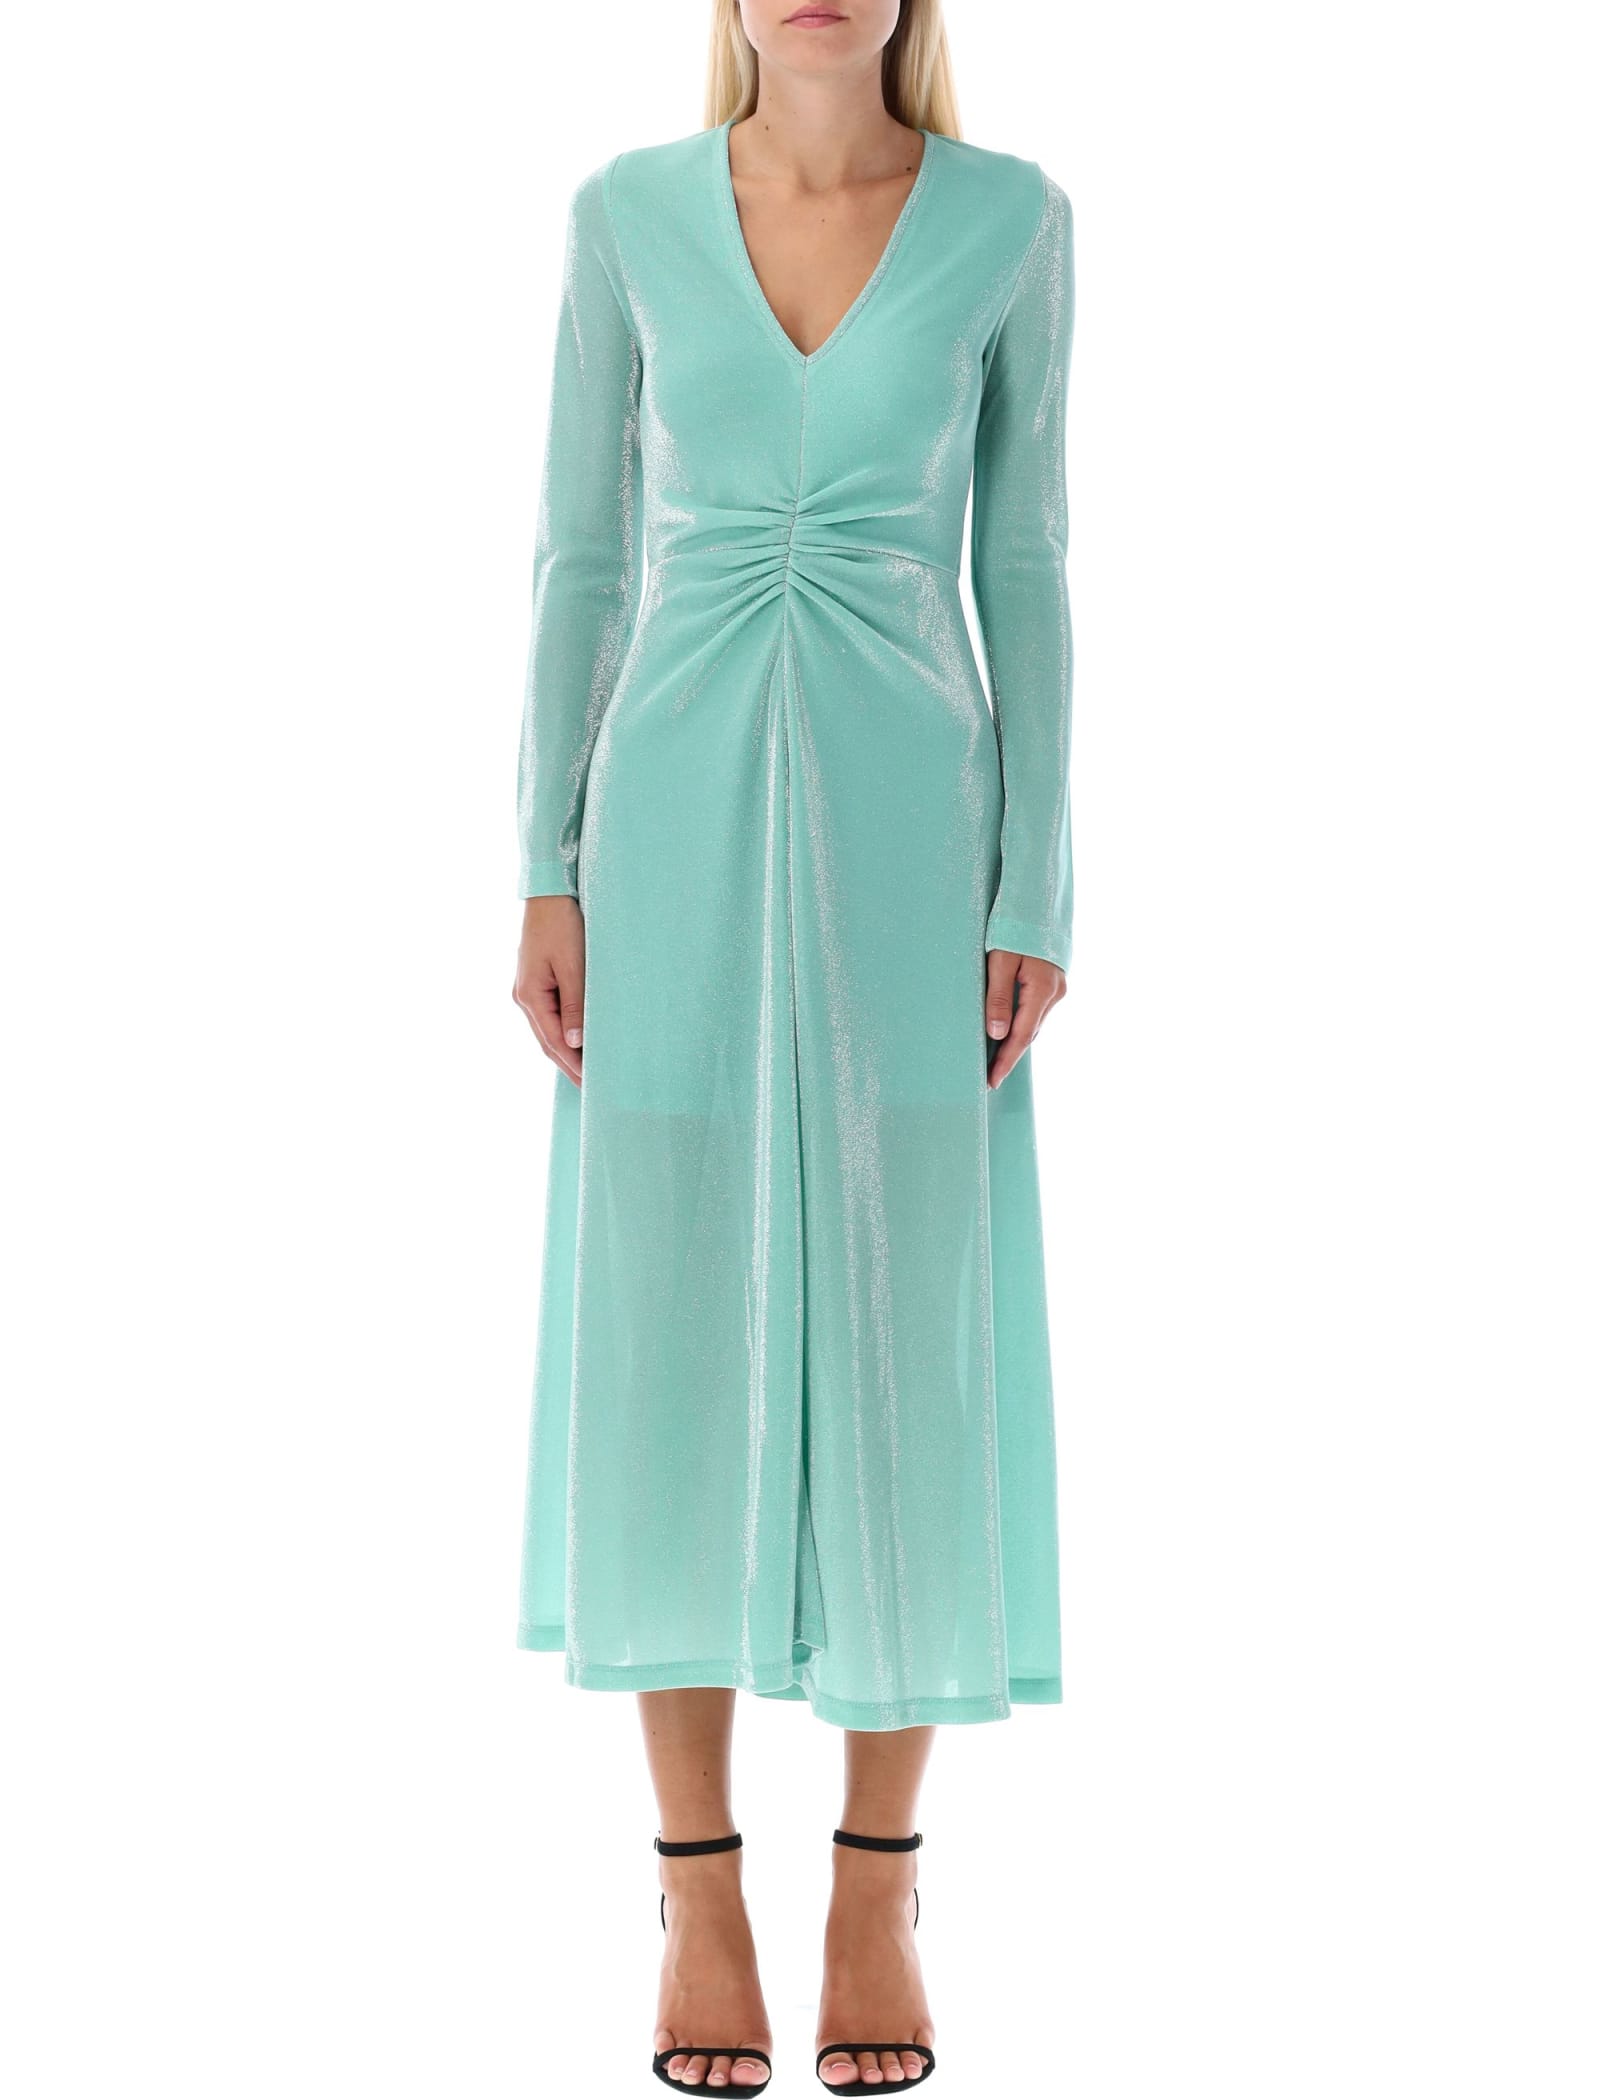 Rotate by Birger Christensen Metallic Jersey Long-sleeved Dress